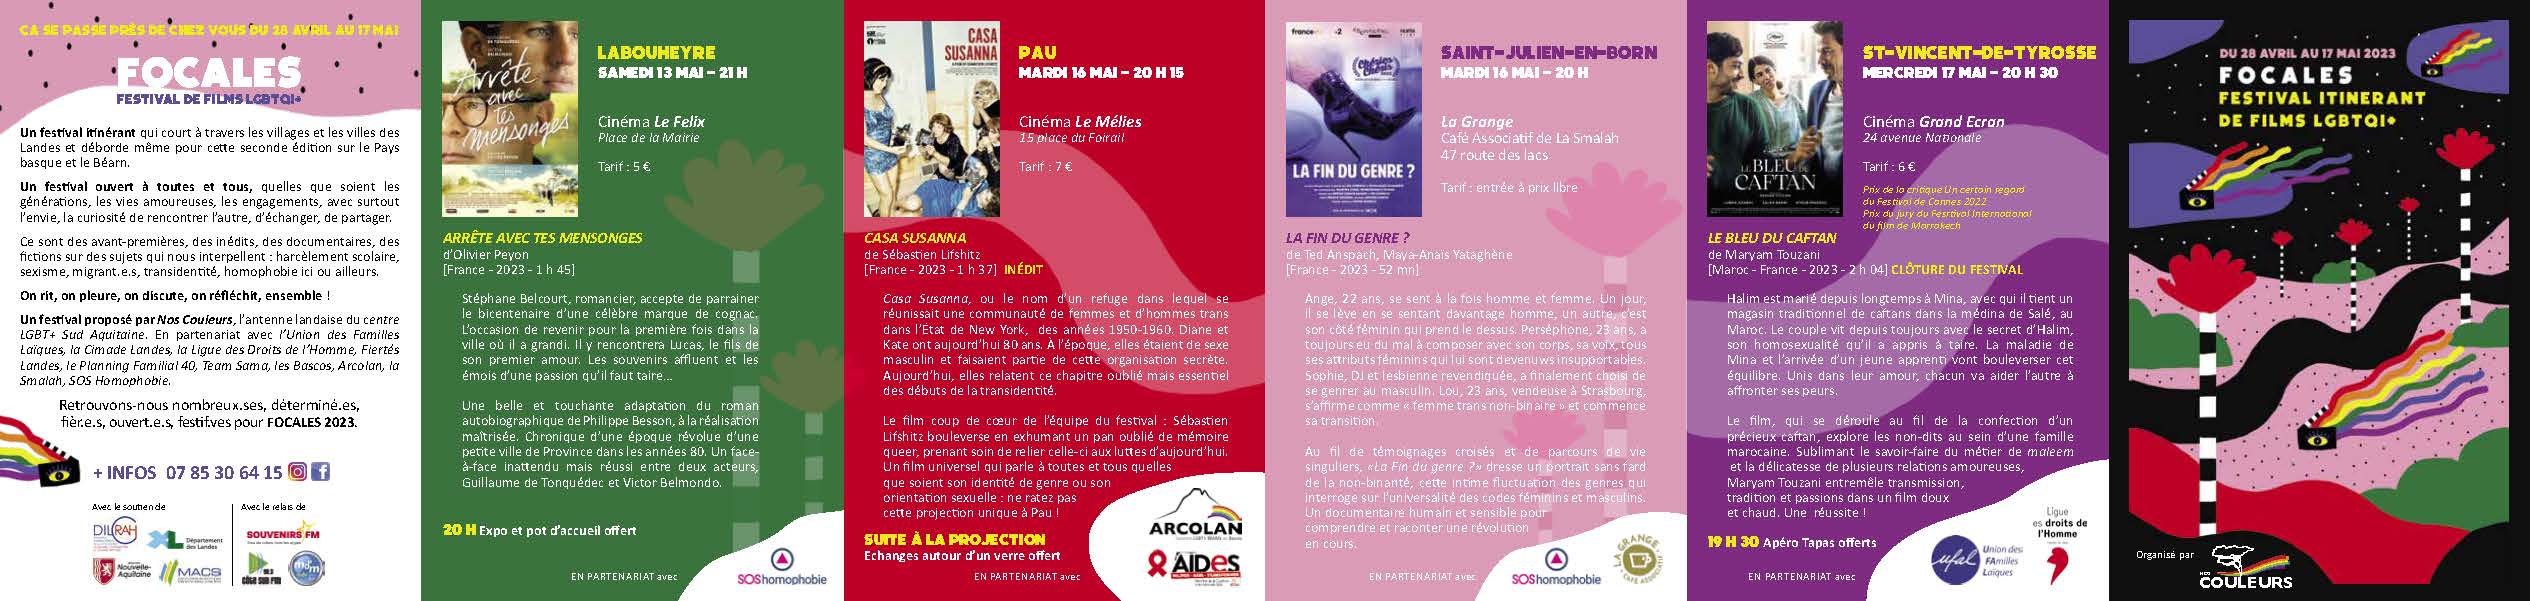 [Ufal Adour Côte Sud] Du 28 avril au 17 mai, FOCALES, le festival de film LGBTQI+ des Landes @ St-Vincent de Tyrosse, Soustons, Mont-de-Marsan